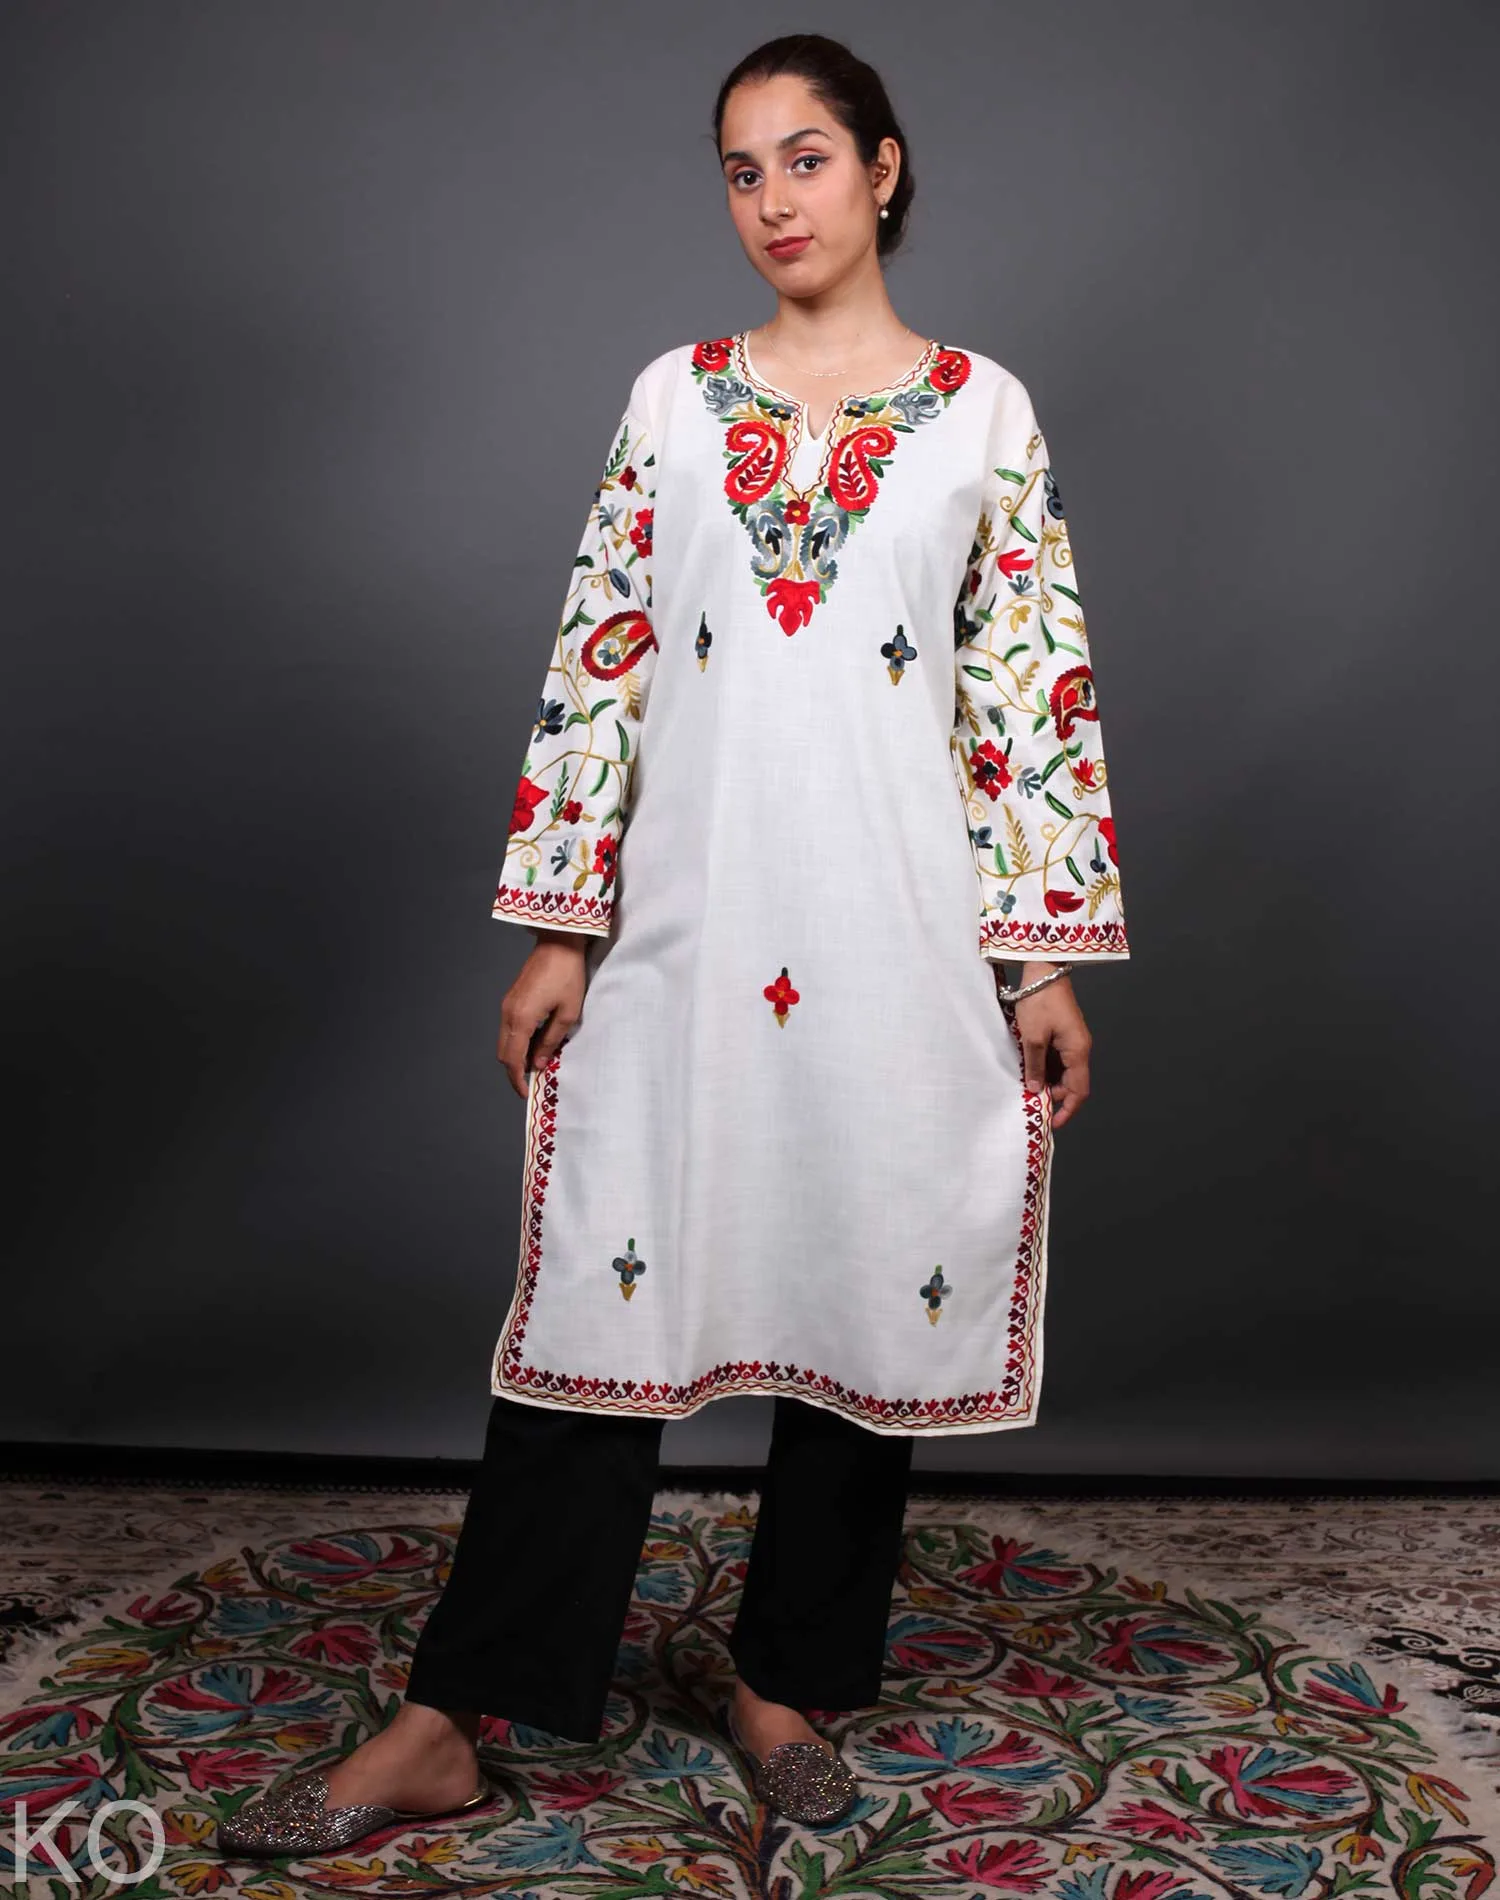 Multicolored Arm Design Aari Embroidered White Cotton Kurti